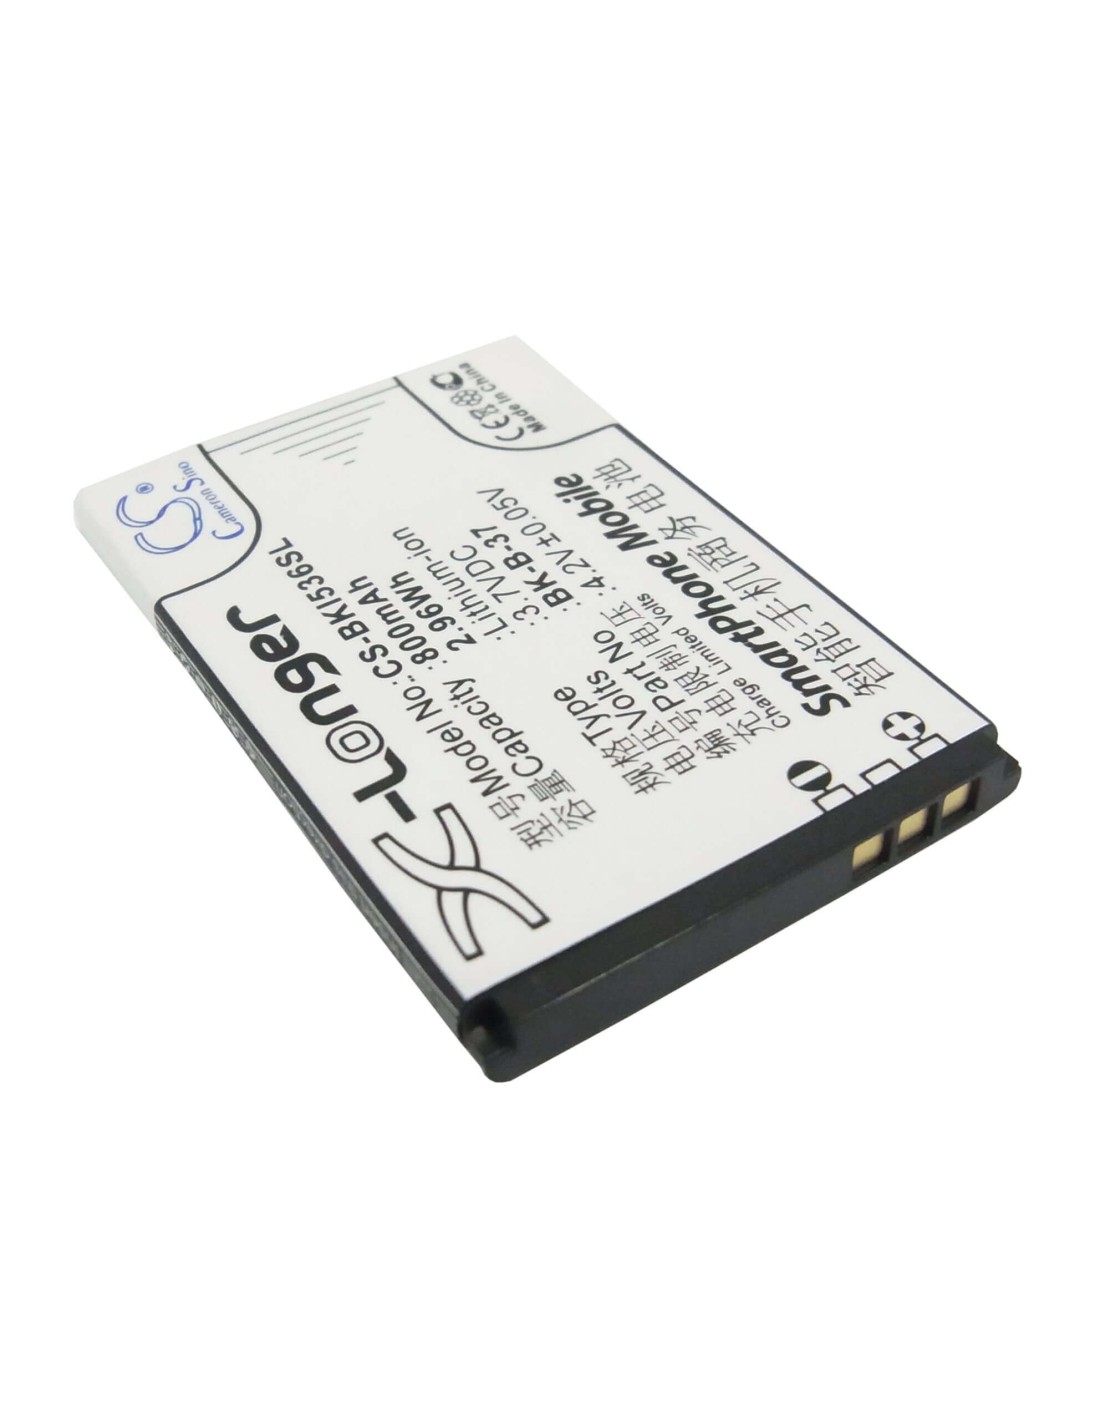 Battery for BBK i536 3.7V, 800mAh - 2.96Wh